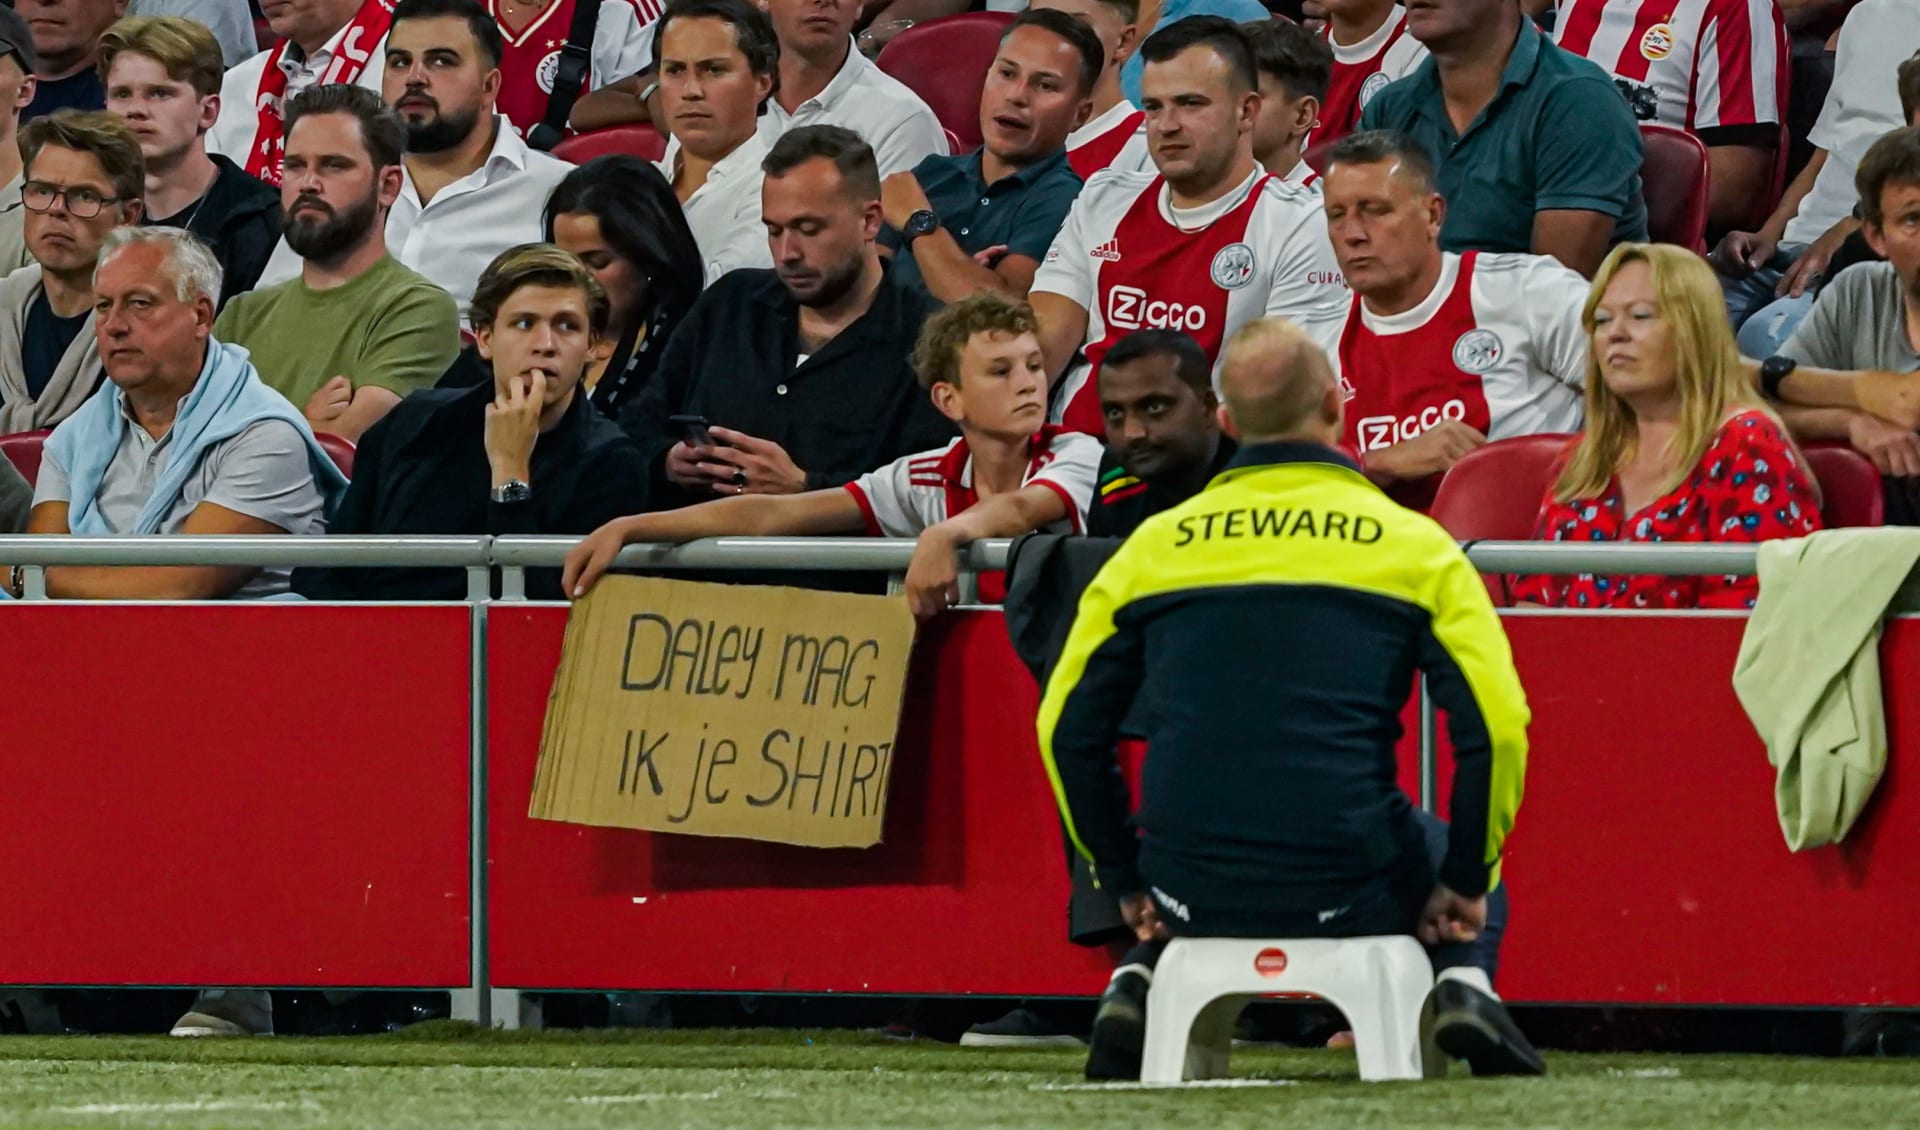 Podobná fotografie už na stadionu Ajaxu Amsterdam nevznikne. Fanoušci nemohou od nové sezony žádat fotbalisty o dres.